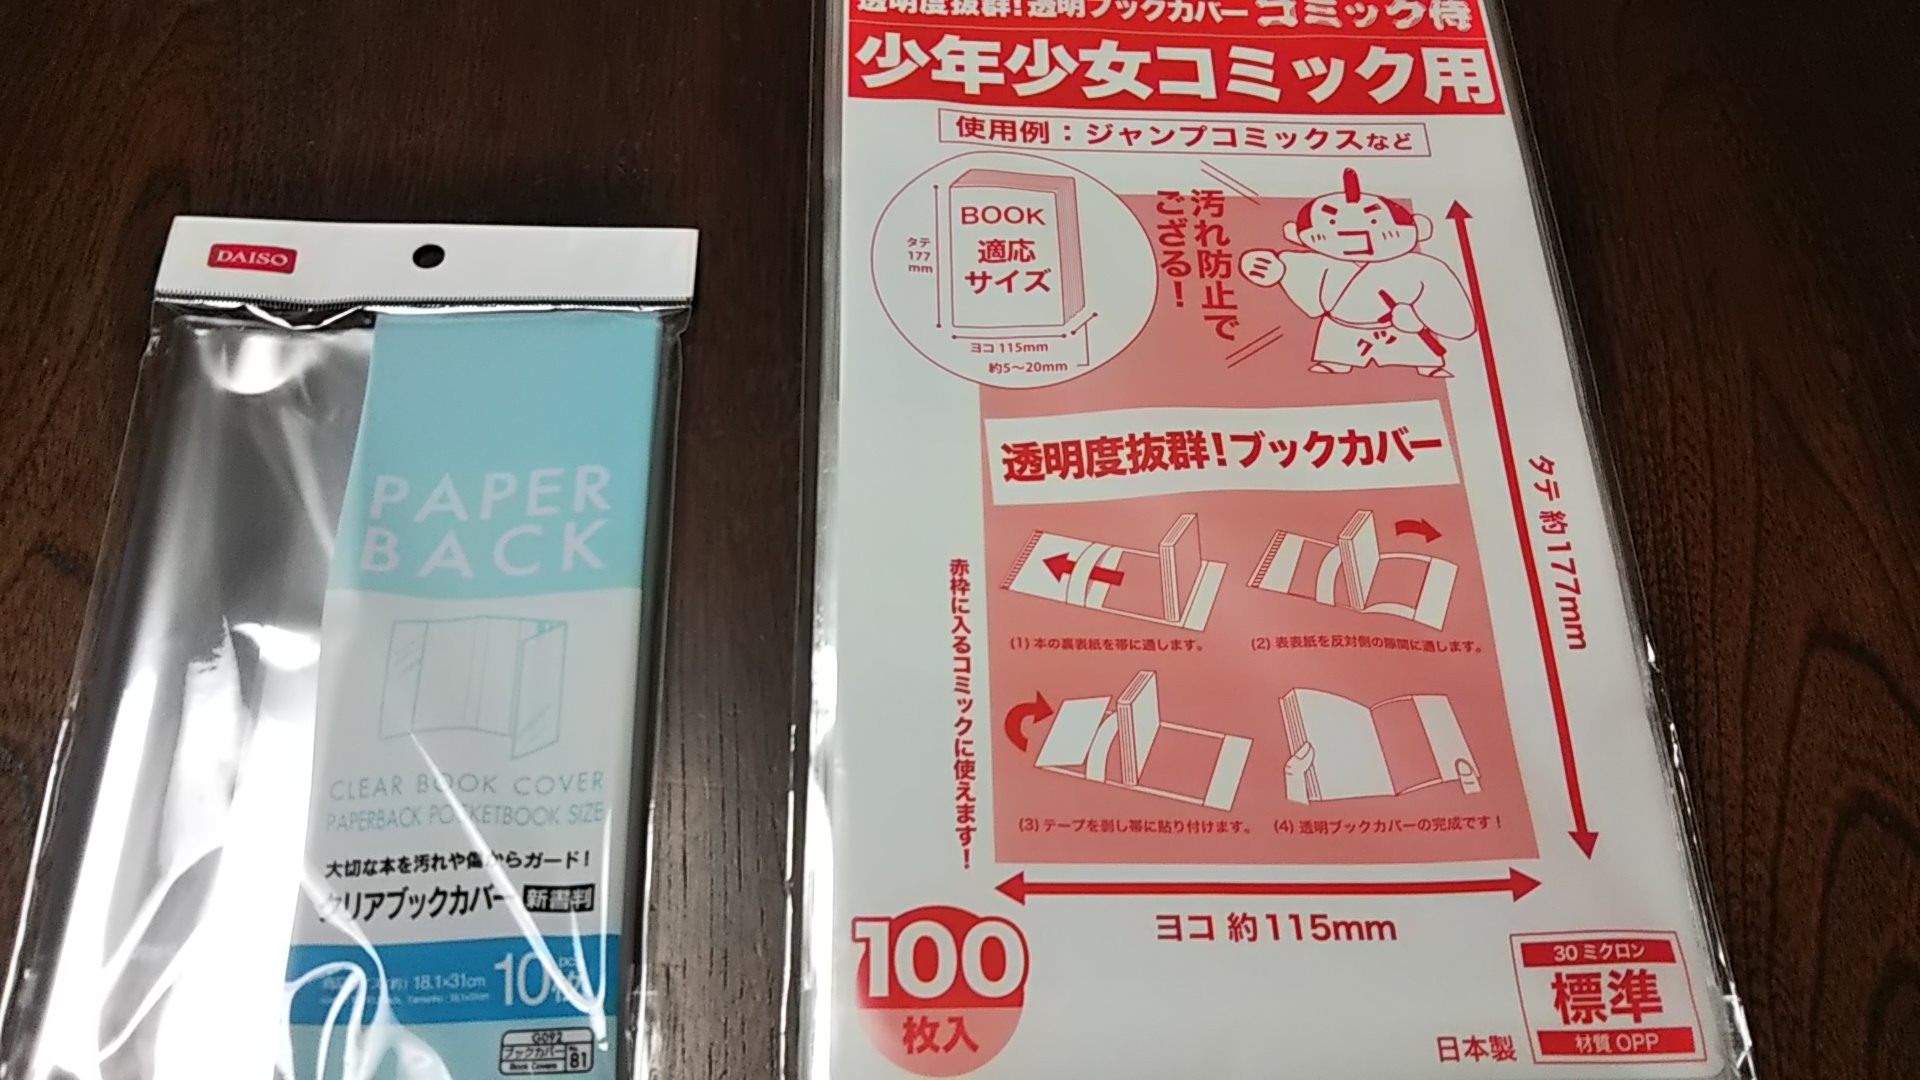 日本製 透明ブックカバー B5判同人誌教科書週刊誌 100枚